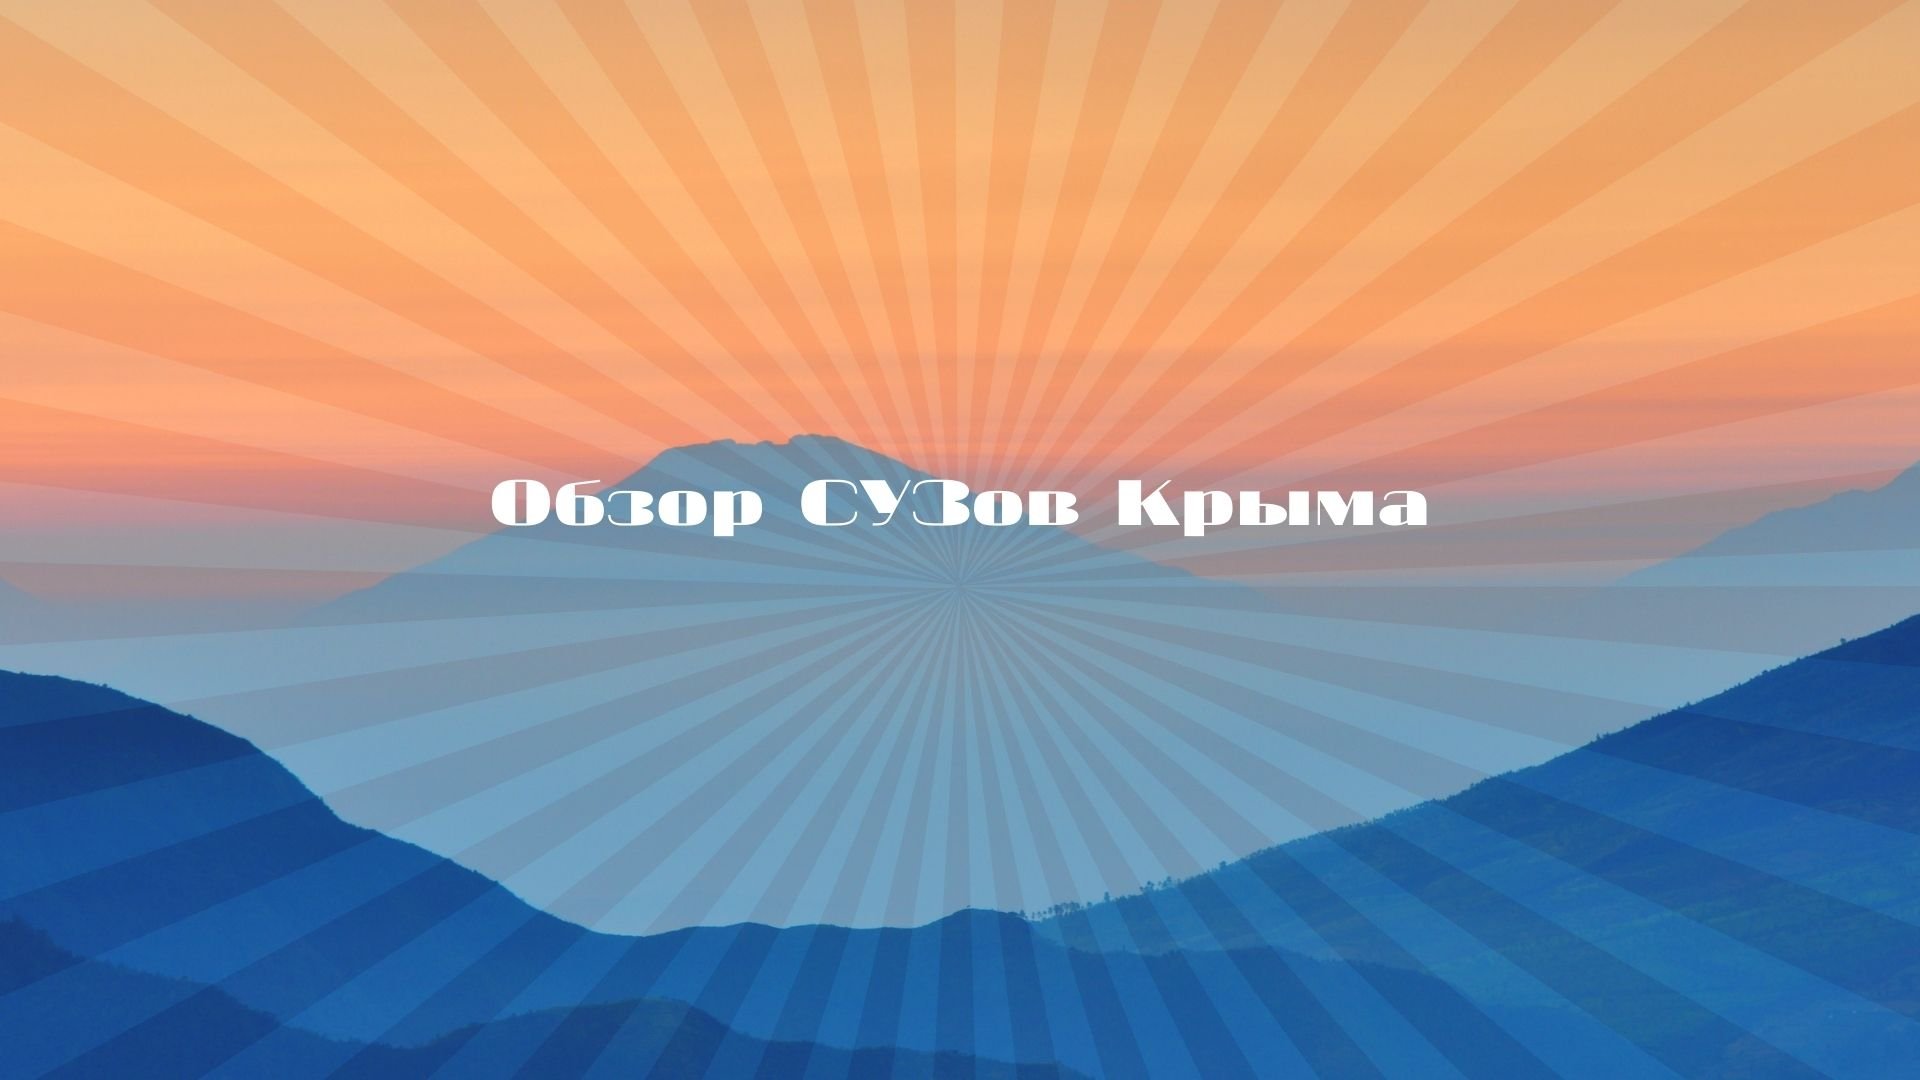 Обзор СУЗов Крыма